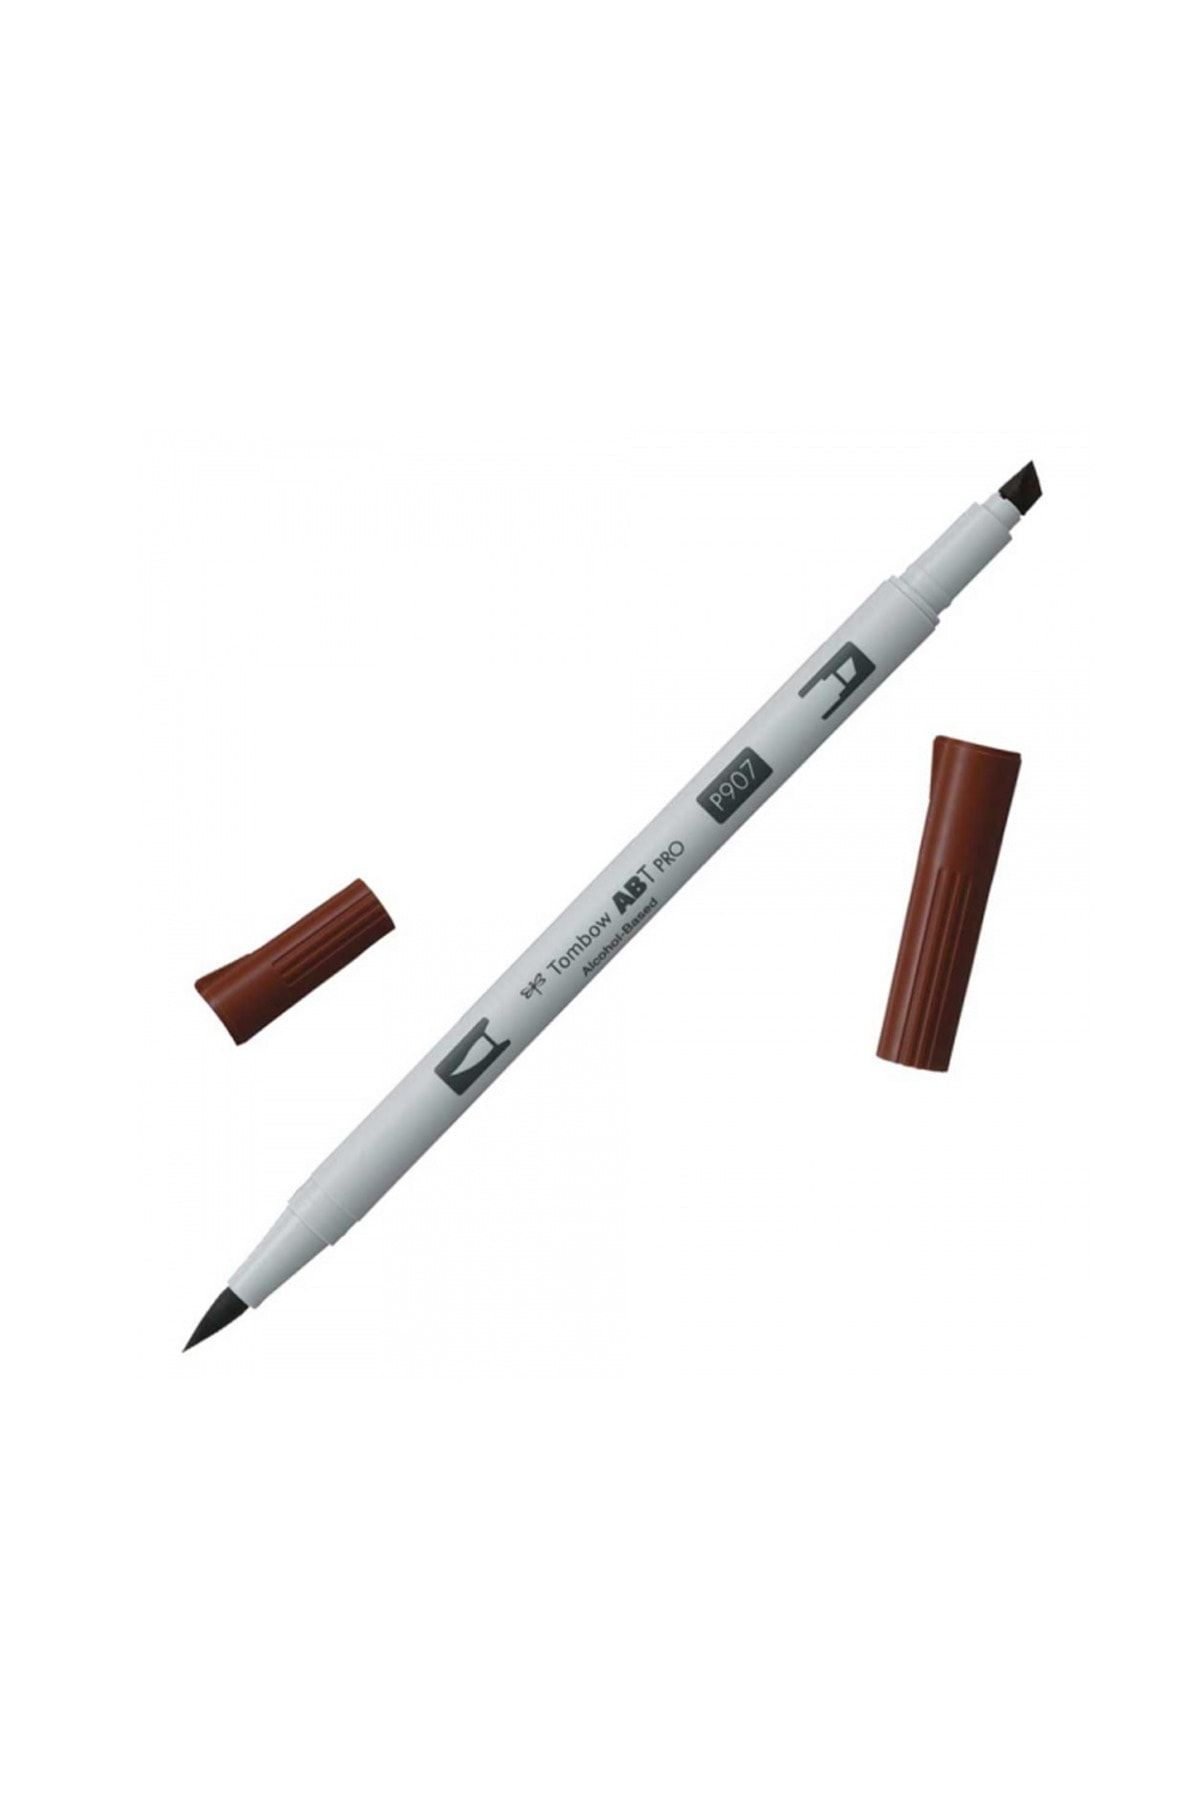 Tombow AB-TP PRO Dual Brush Pen Grafik Kalemi Spice 907